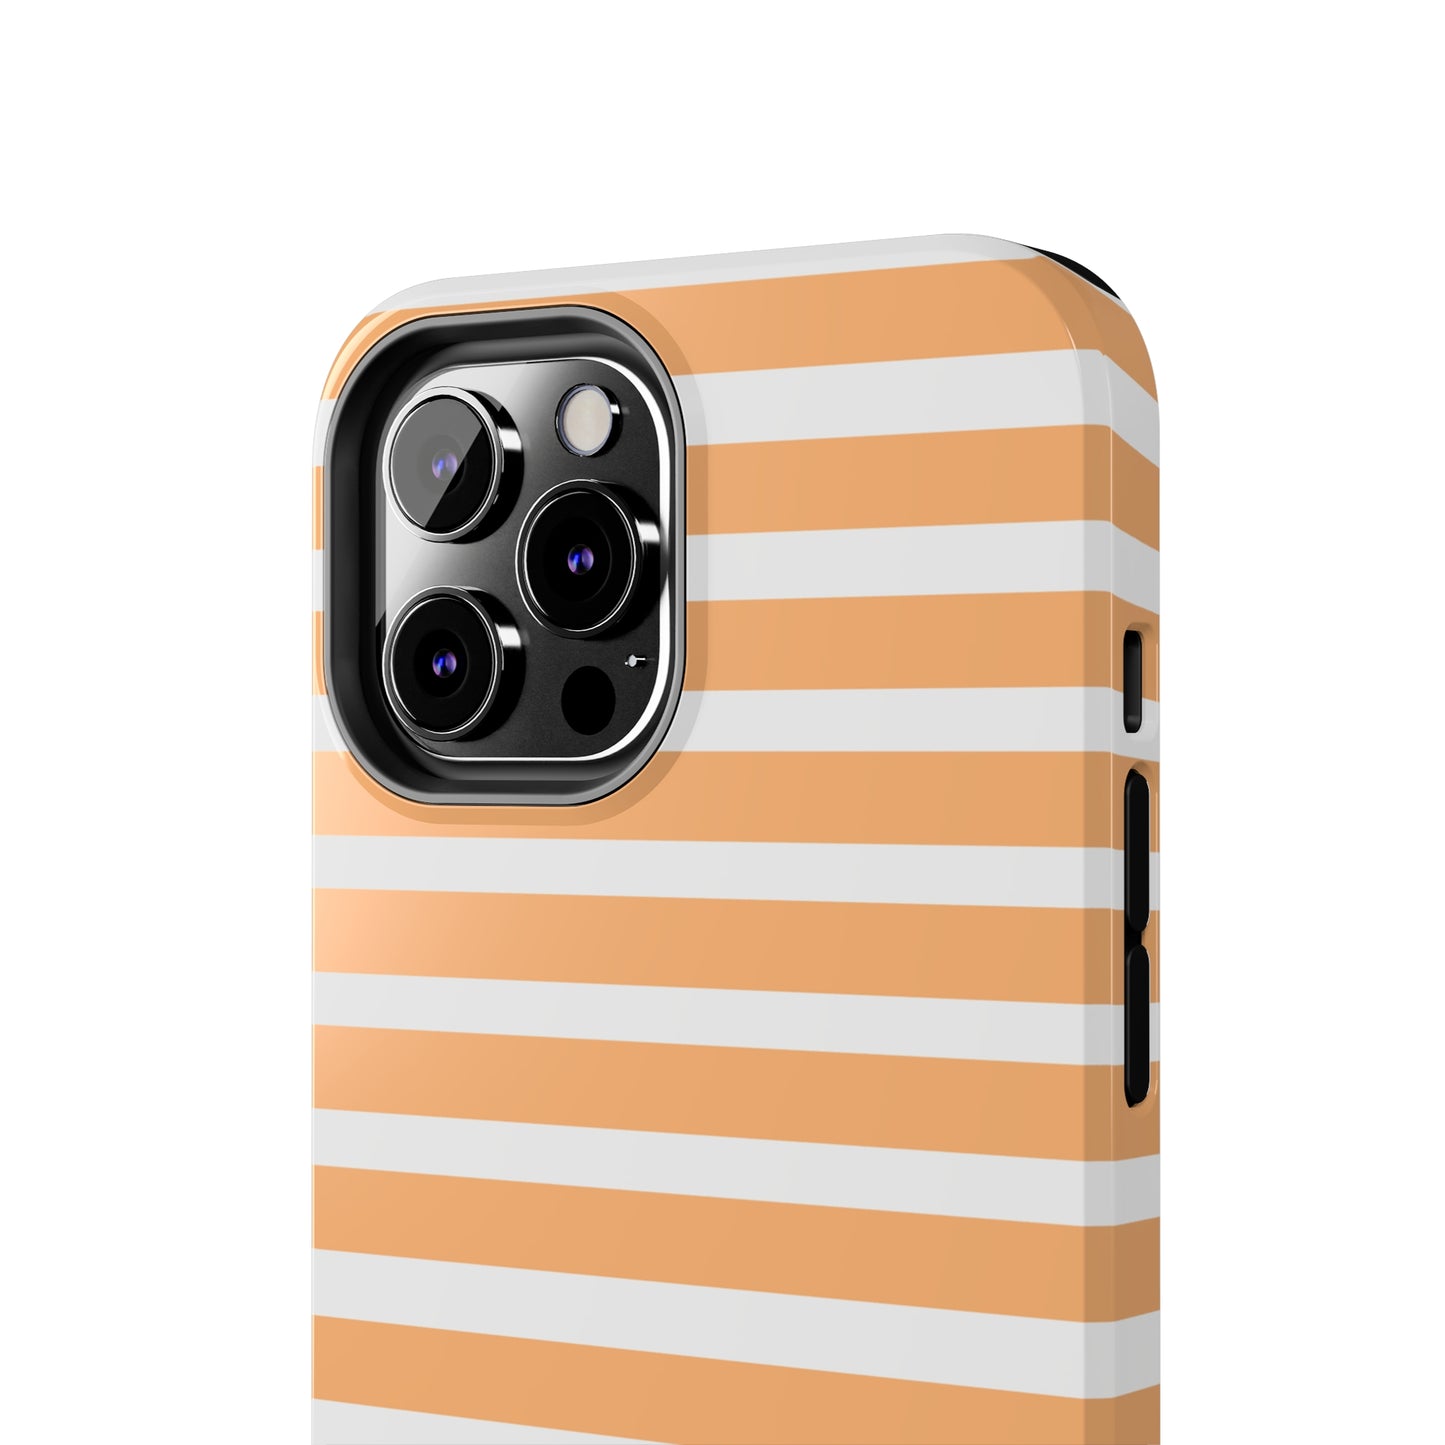 Orange Stripe Lines Phone Case